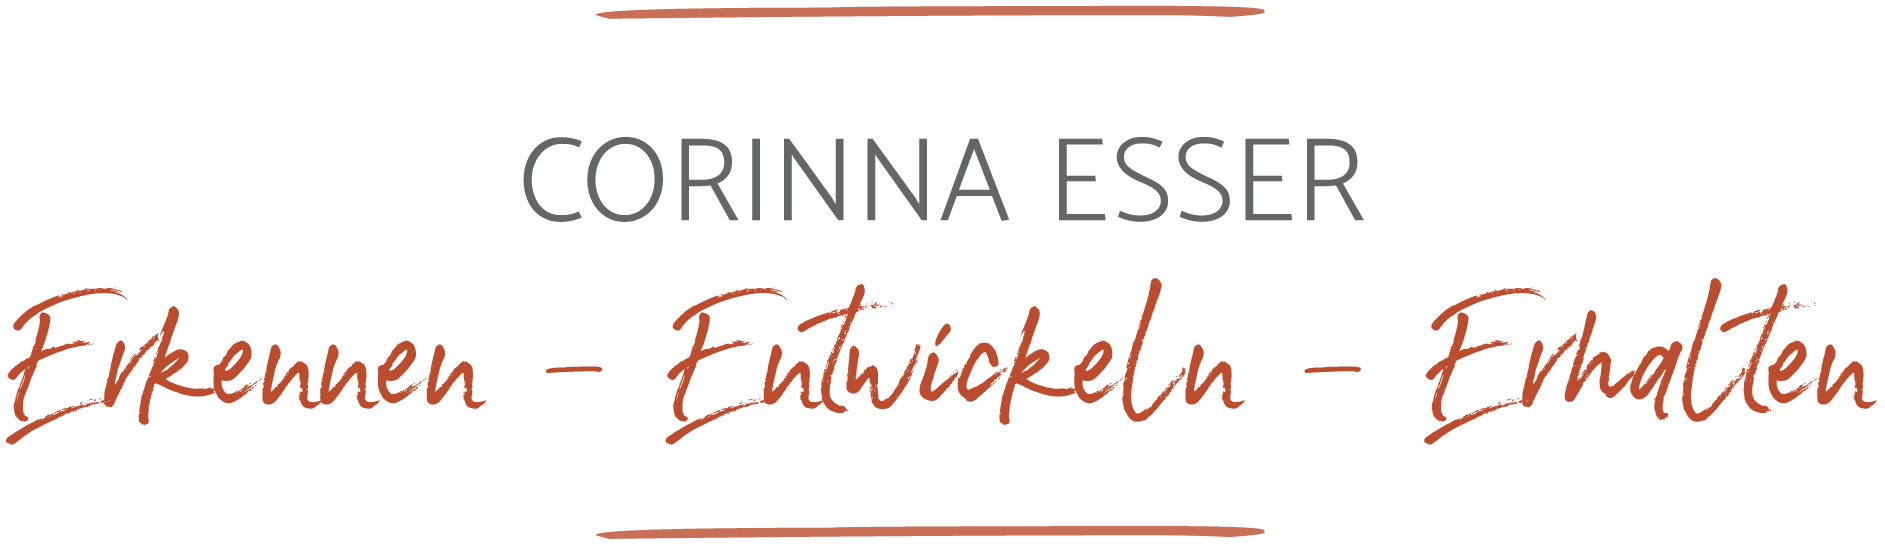 Corinna Esser - Coaching, Beratung & systemische Therapie aus München